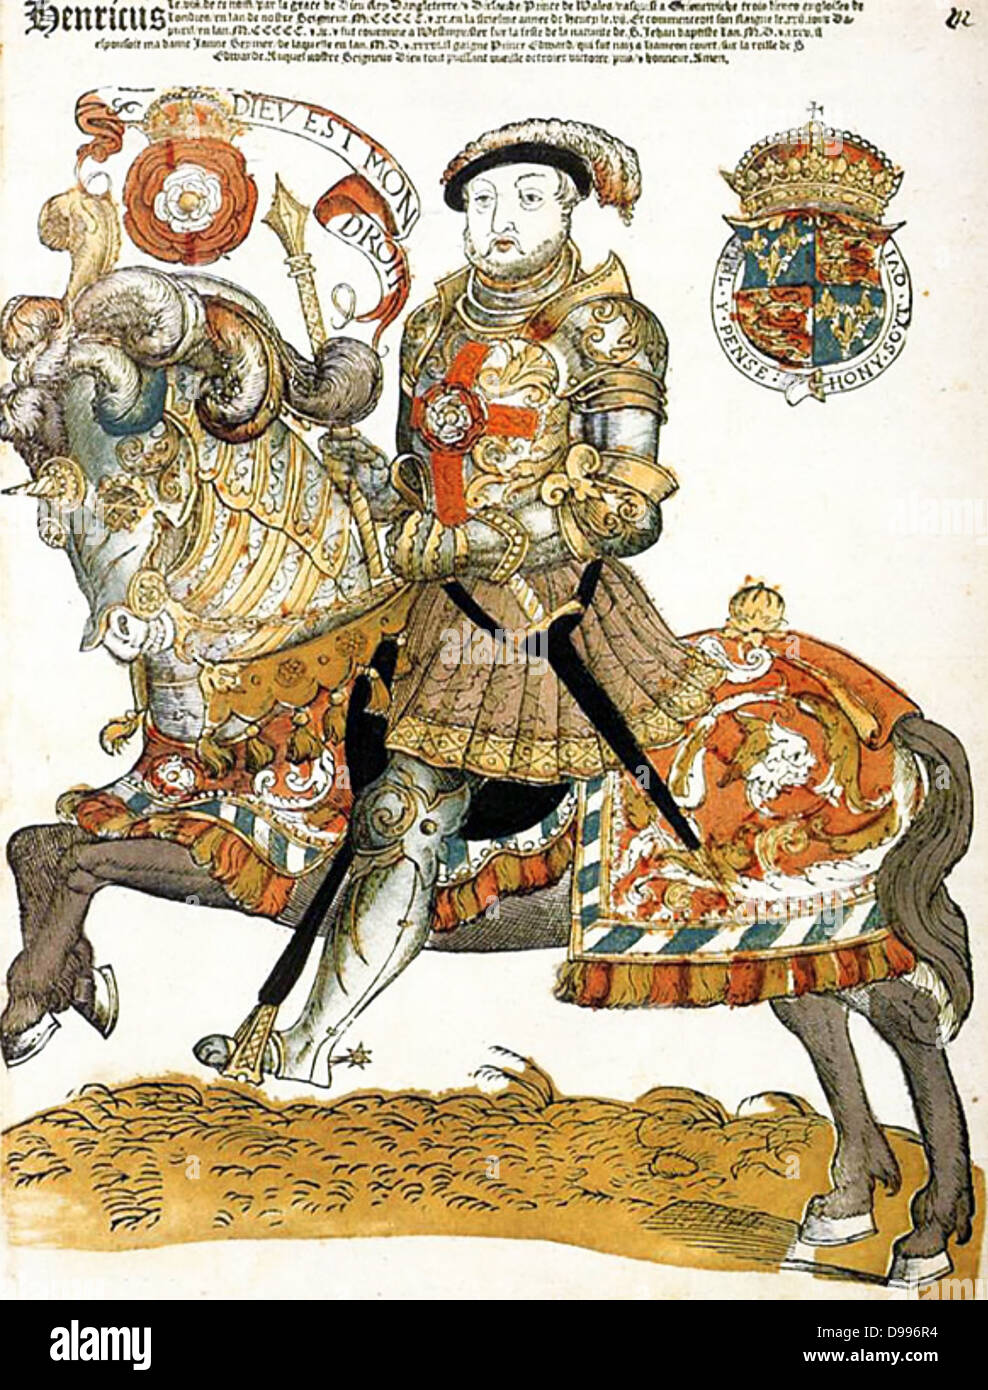 Englische König Henry VIII gezeigt auf dem Pferderücken, Künstler unbekannt, Riijksmueum, Amsterdam Stockfoto